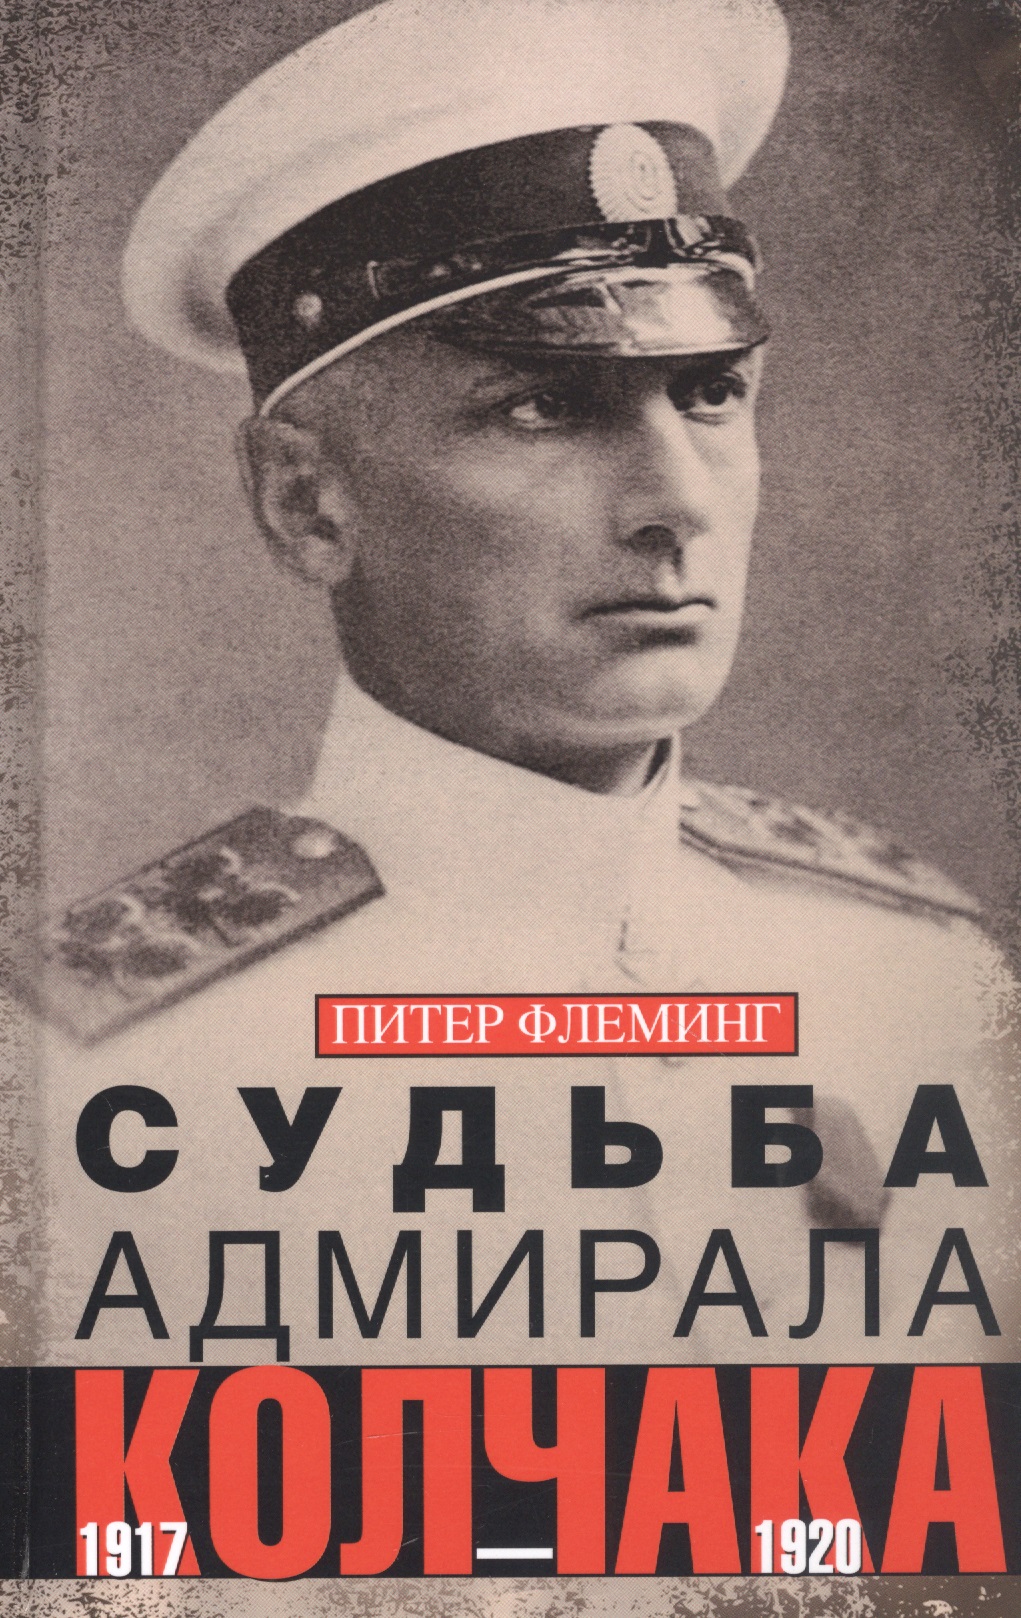 максимов владимир емельянович звезда адмирала колчака Судьба адмирала Колчака. 1917—1920